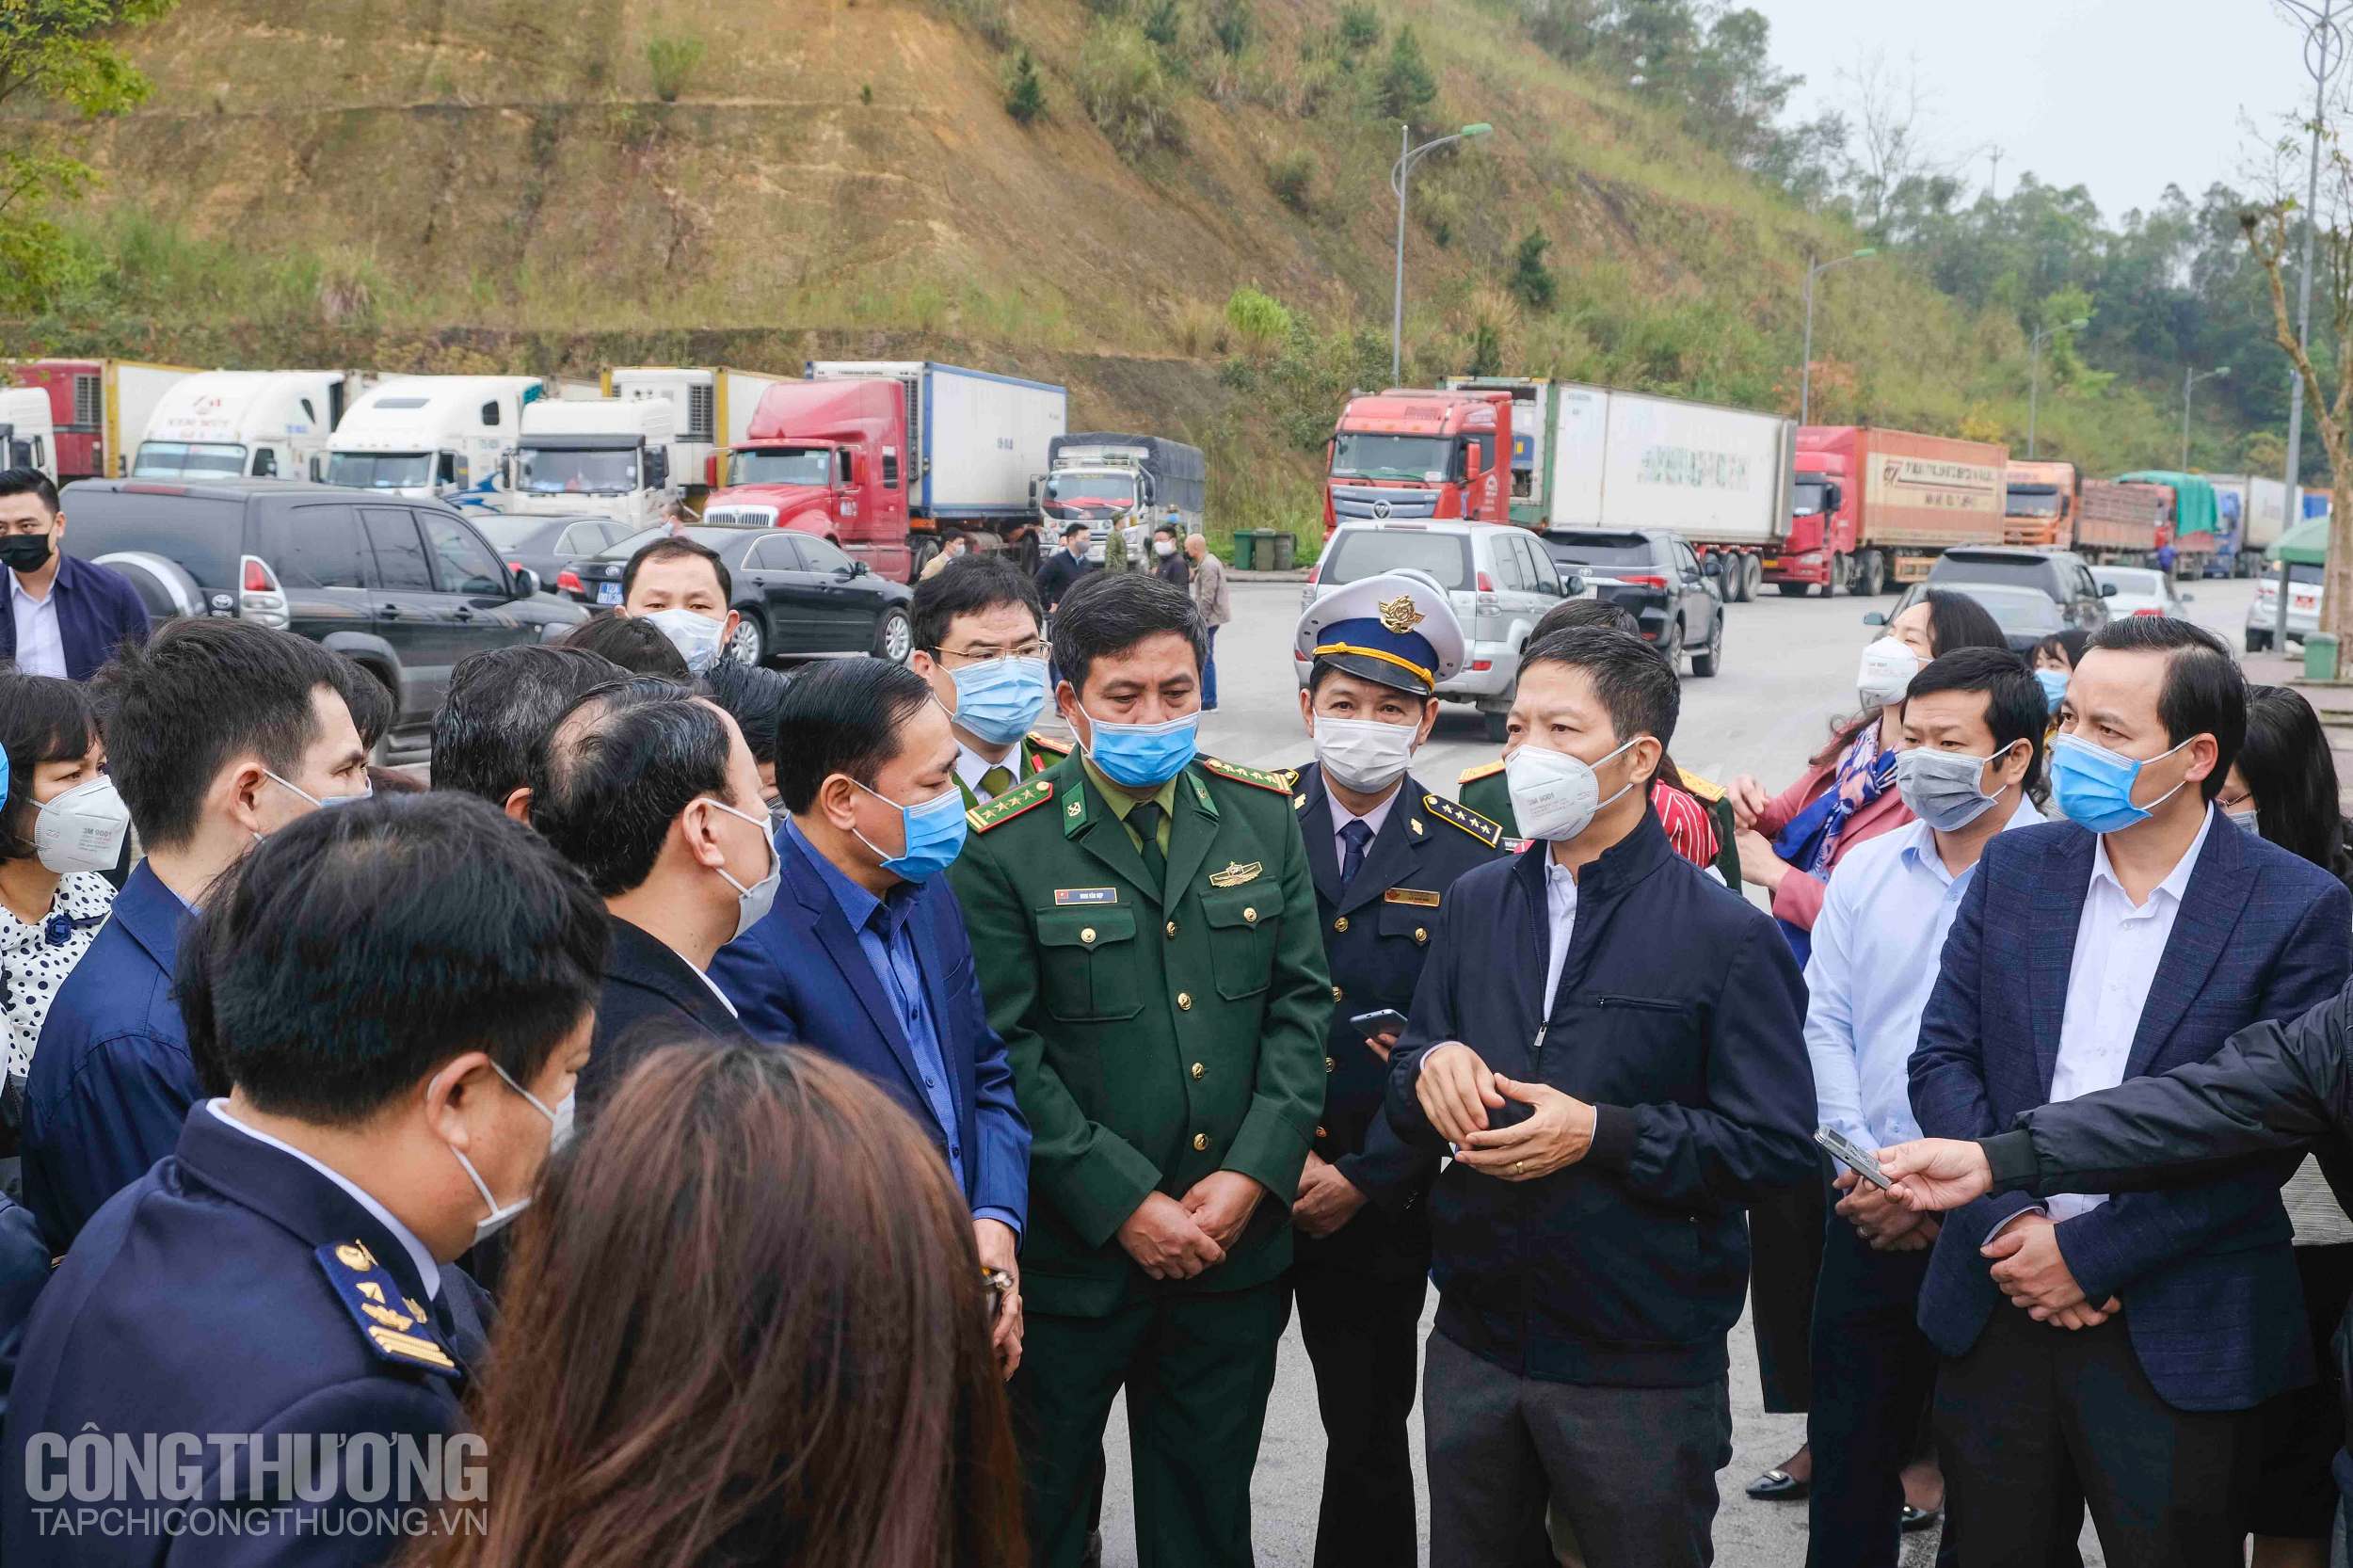 Bộ trưởng Trần Tuấn Anh cùng đoàn công tác Bộ Công Thương làm việc tại tỉnh Lạng Sơn sáng 7/3 nhằm tháo gỡ vướng mắc trong hoạt động thương mại qua biên giới